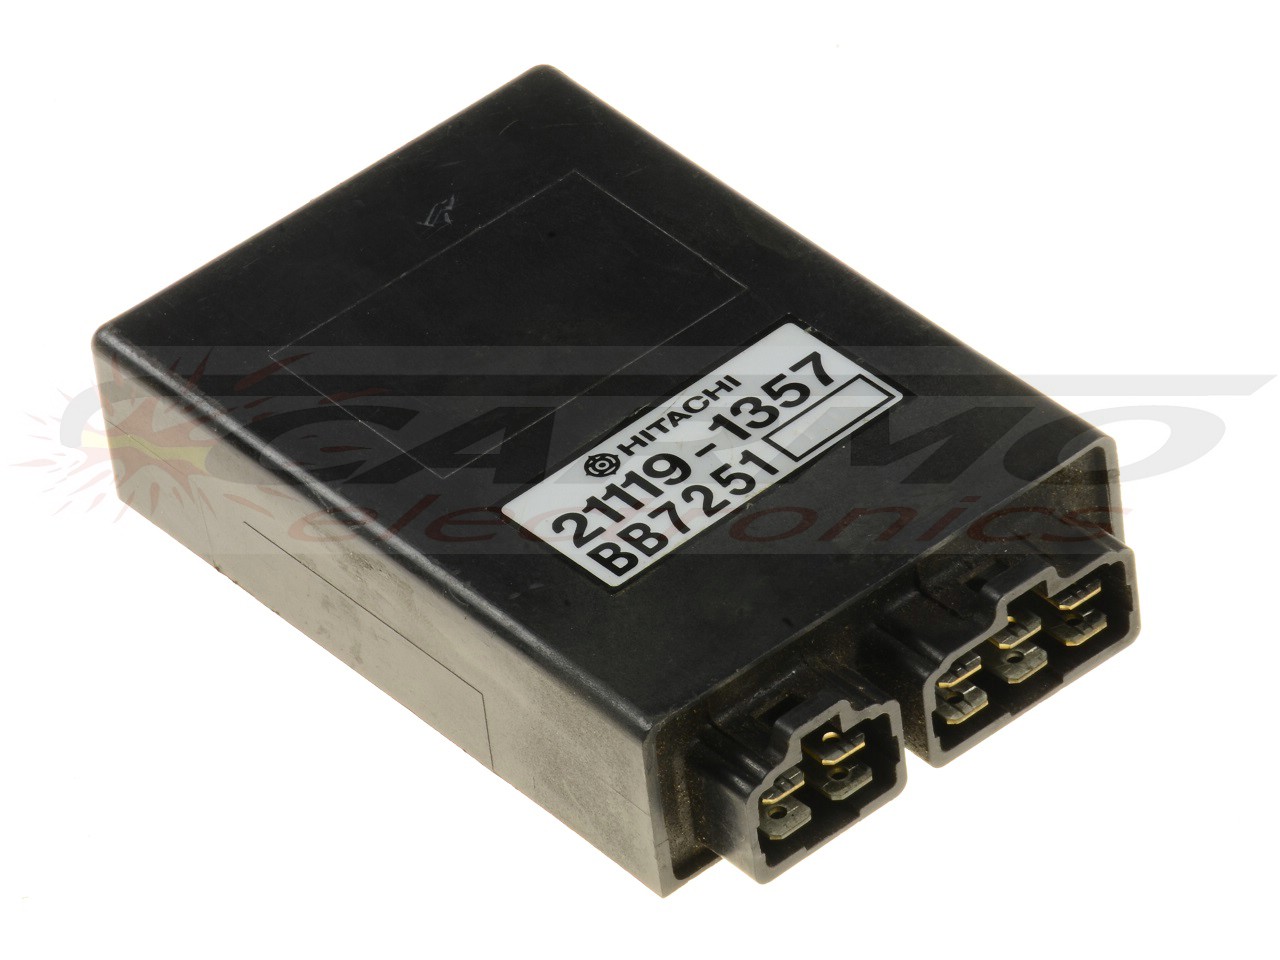 GT750 CDI TCI ECU igniter module (21119-1357)